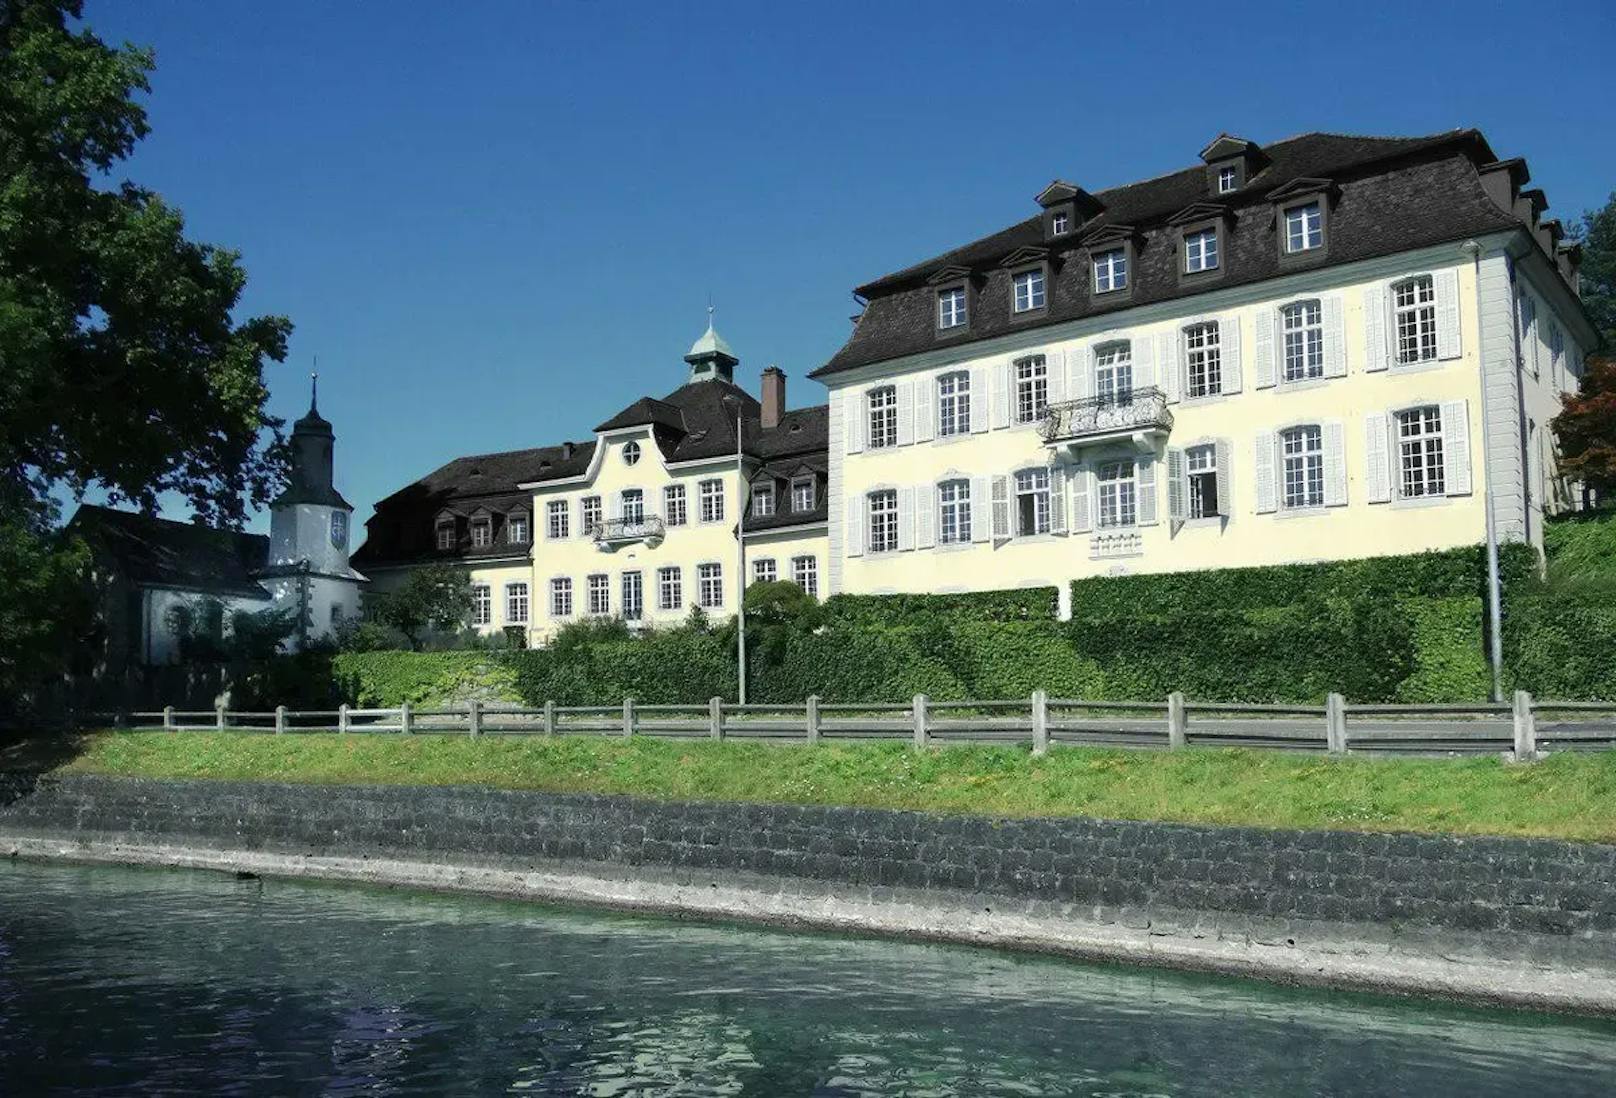 Das historische Anwesen "St. Karlshof" in Zug (Schweiz) wurde im 17. Jahrhundert erbaut. Zuletzt diente es als Asylunterkunft. 2018 kaufte es Niklas Nikolajsen der Stadt Zug ab und renovierte es umfassend.